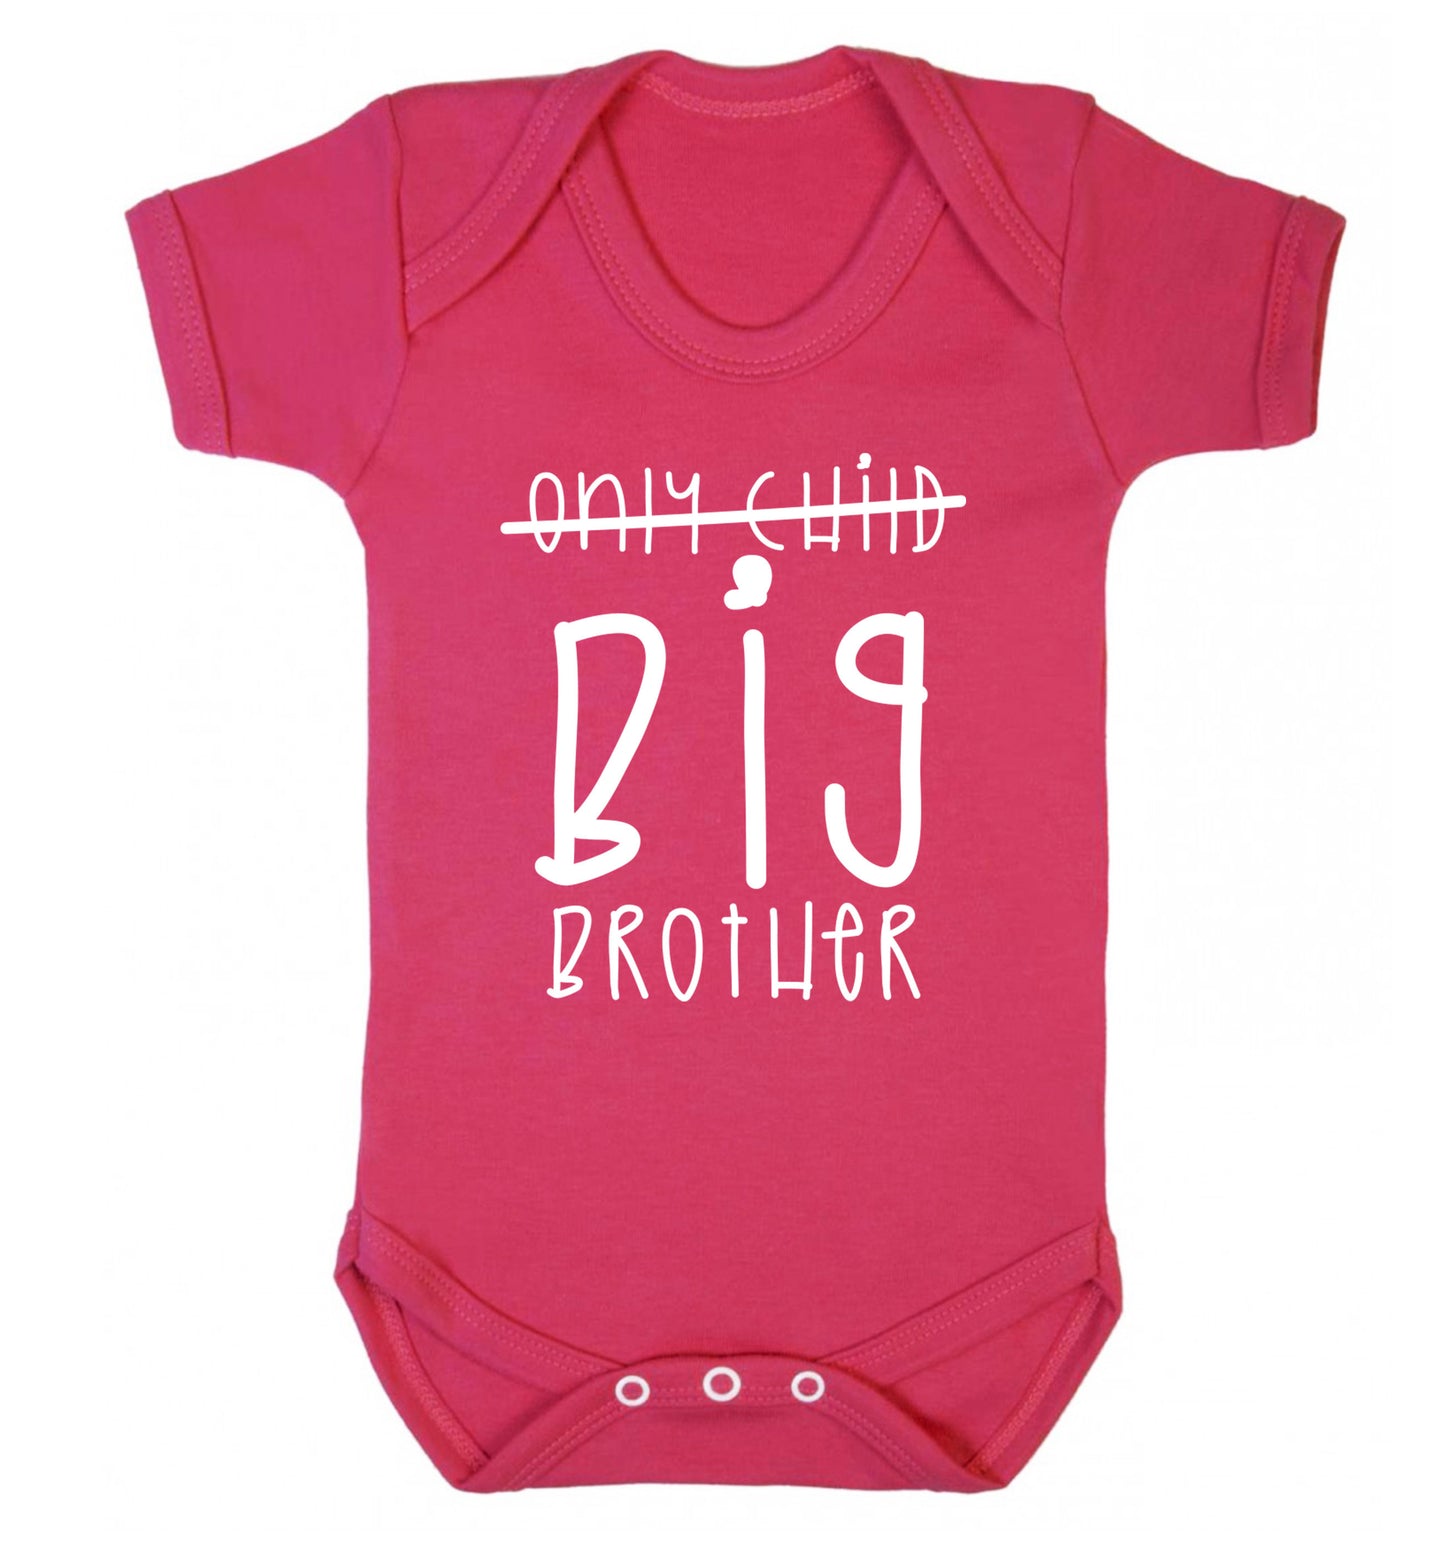 Only child big brother Baby Vest dark pink 18-24 months